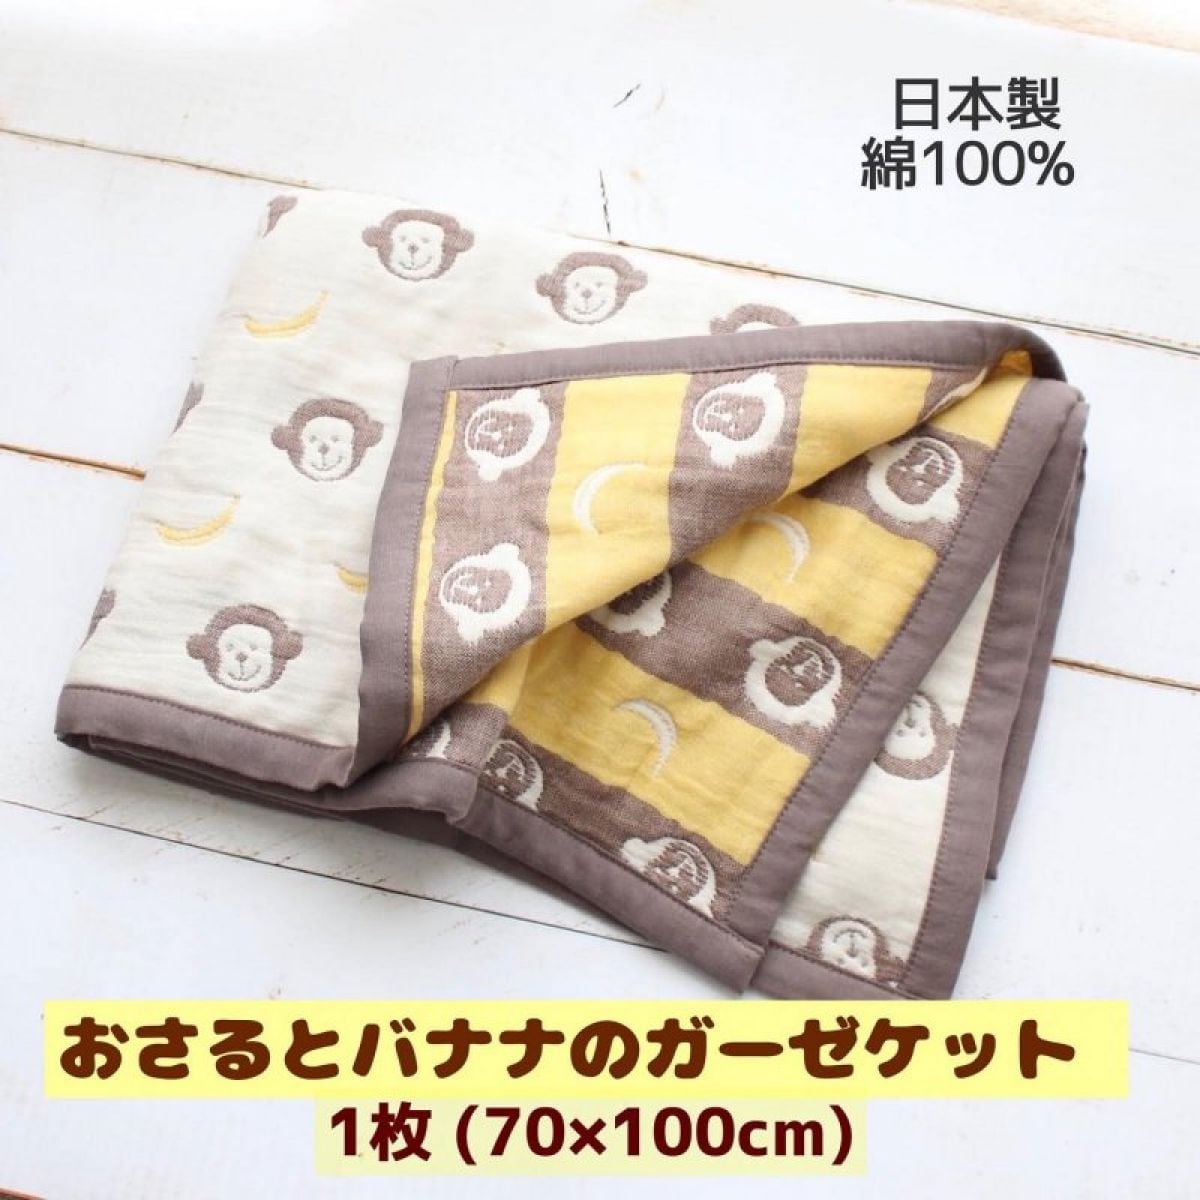 おさるとバナナの柄織ふわふわ６重ガーゼケット(おくるみ・ひざかけ)日本製/箱詰めギフトラッピング対応